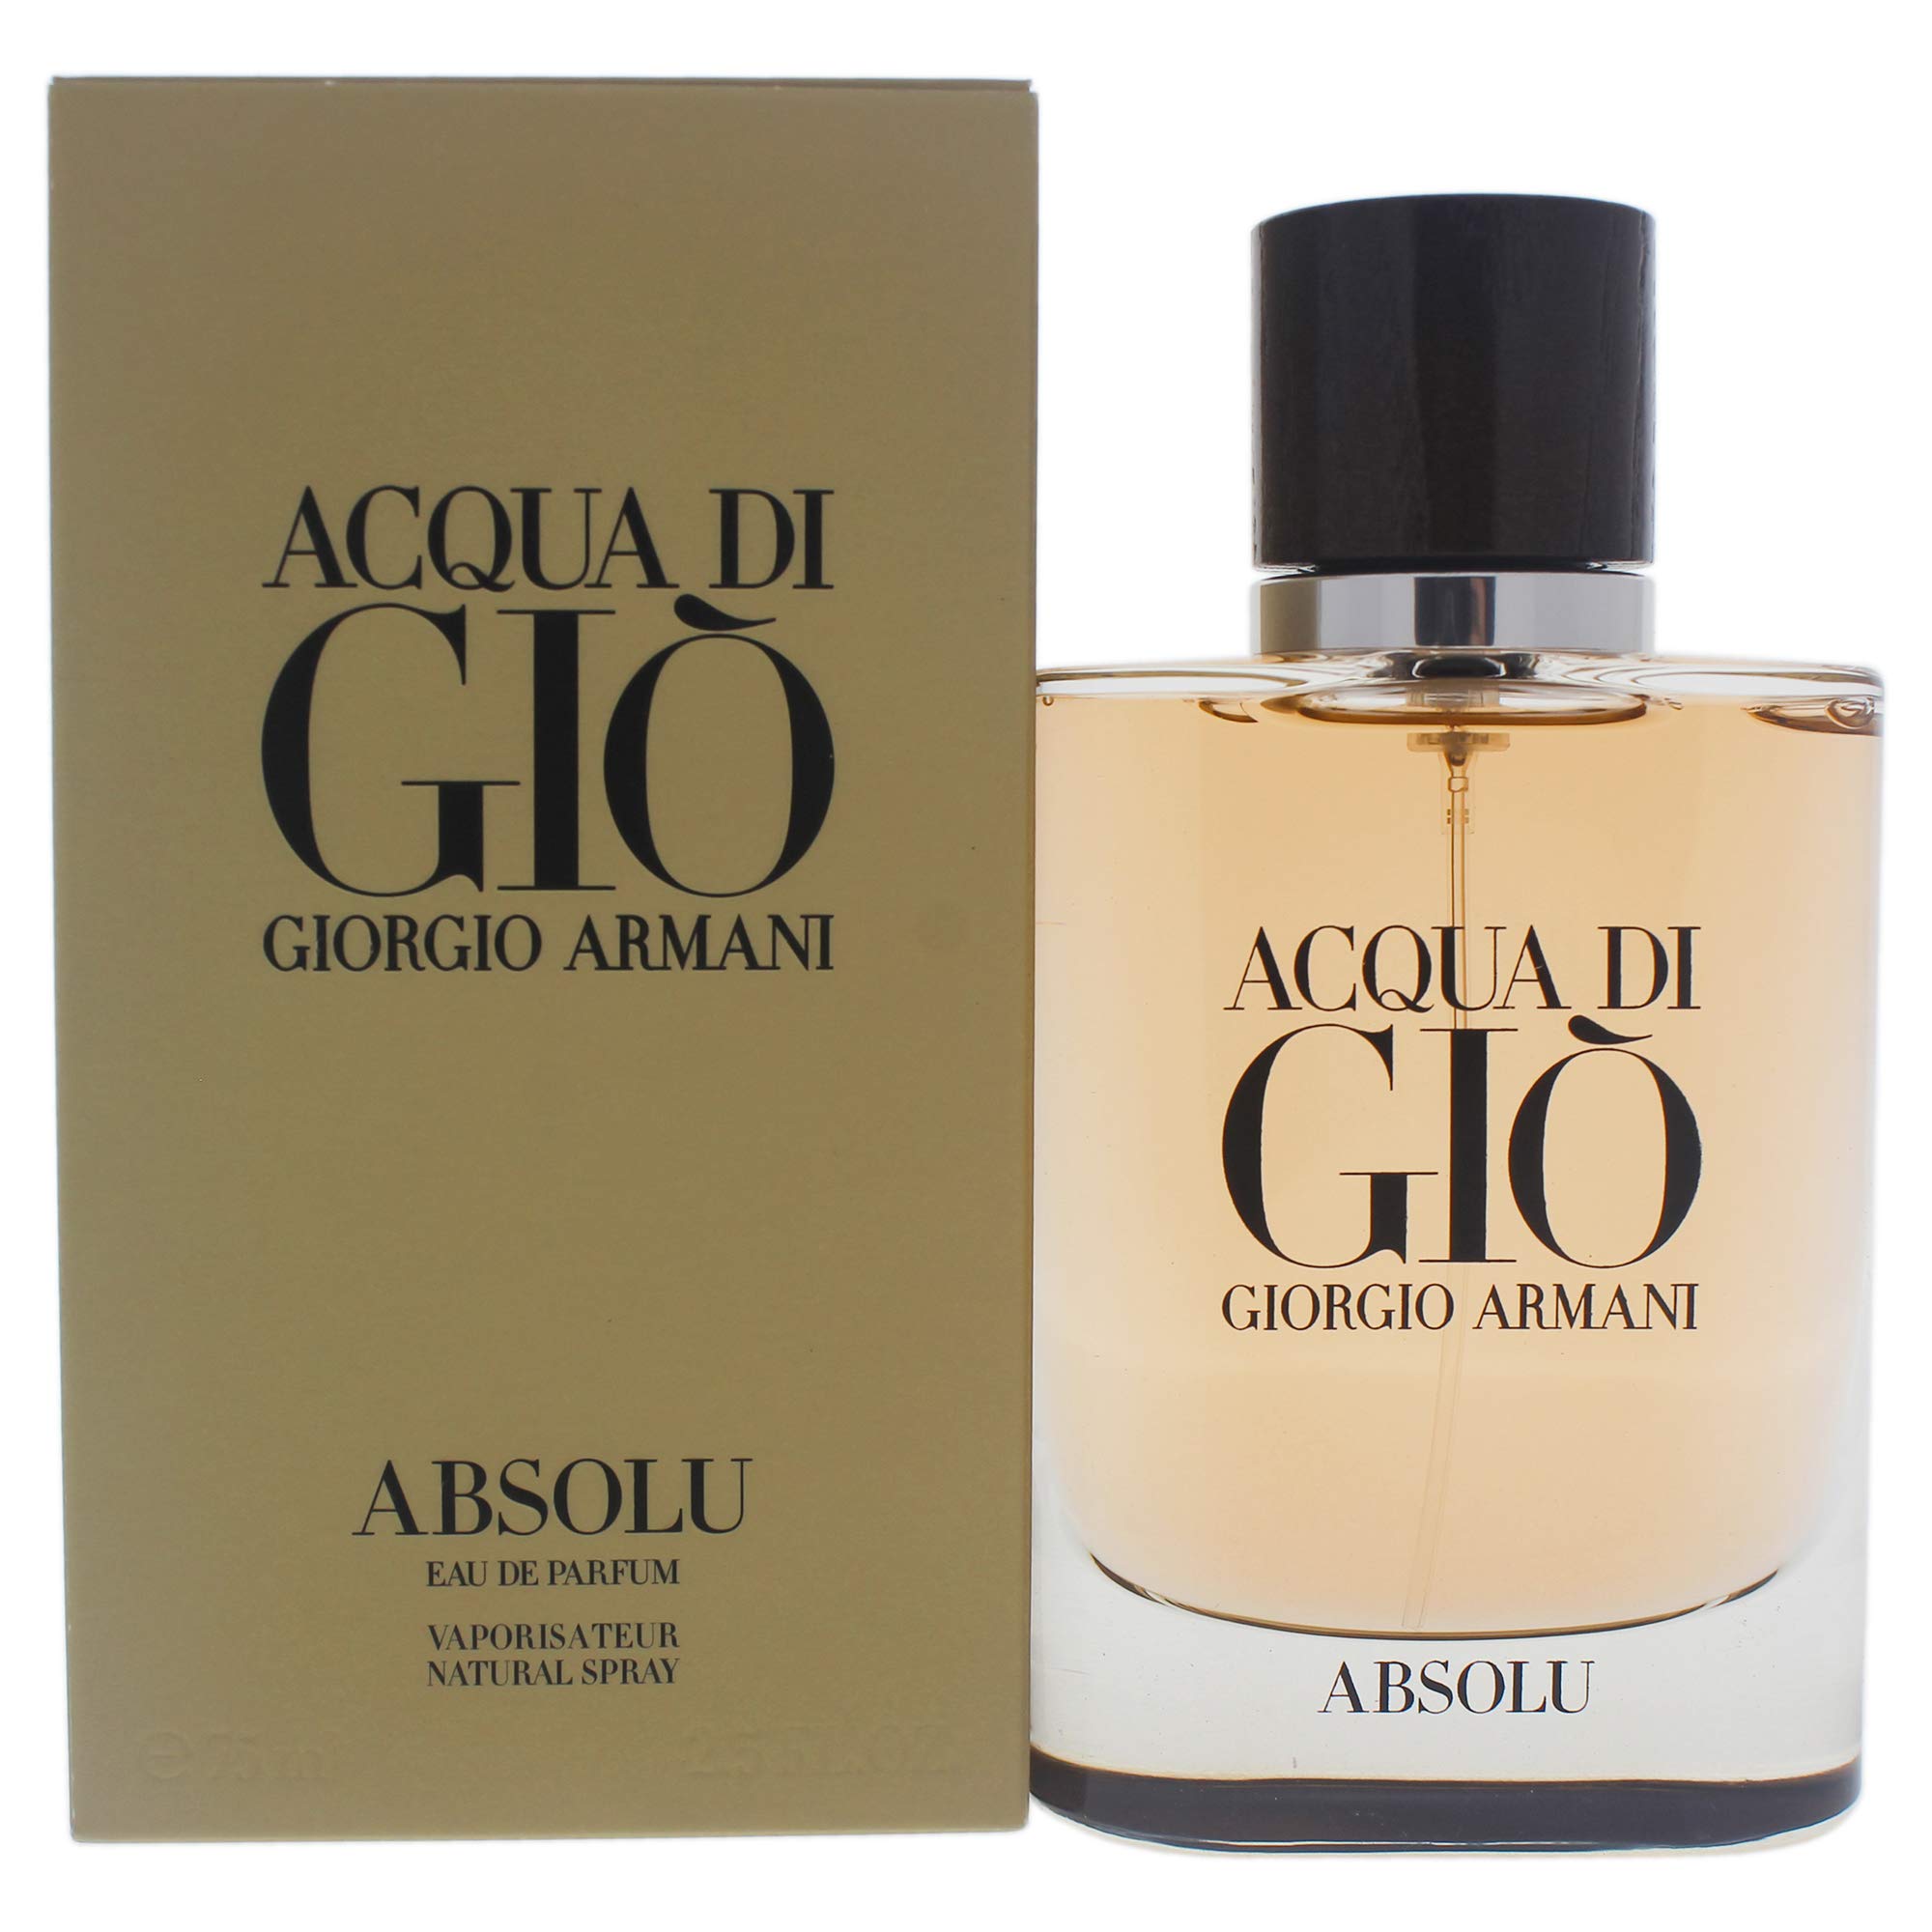 GIORGIO ARMANI Acqua Di Gio Absolu Eau De Parfum Spray, 2.5 Fl Oz, Beige